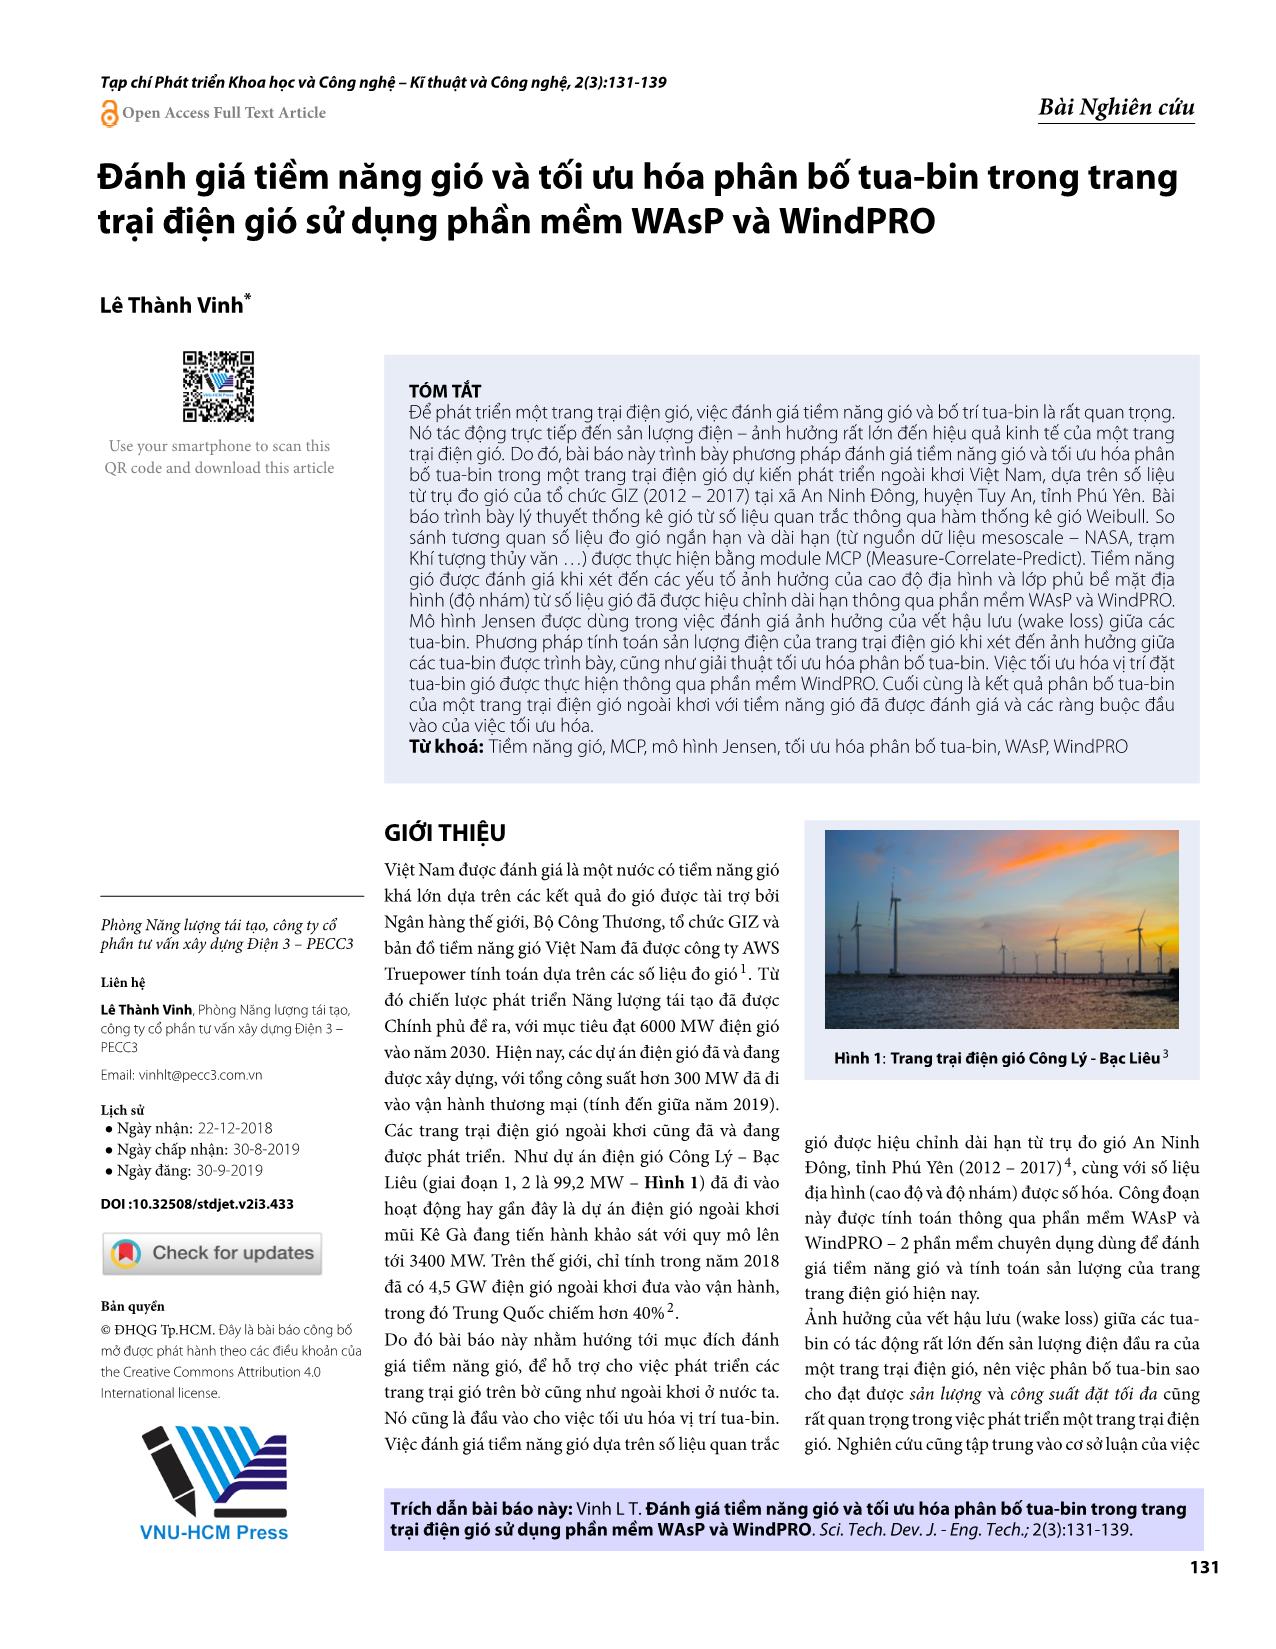 Đánh giá tiềm năng gió và tối ưu hóa phân bố tua - bin trong trang trại điện gió sử dụng phần mềm WAsP và WindPRO trang 1